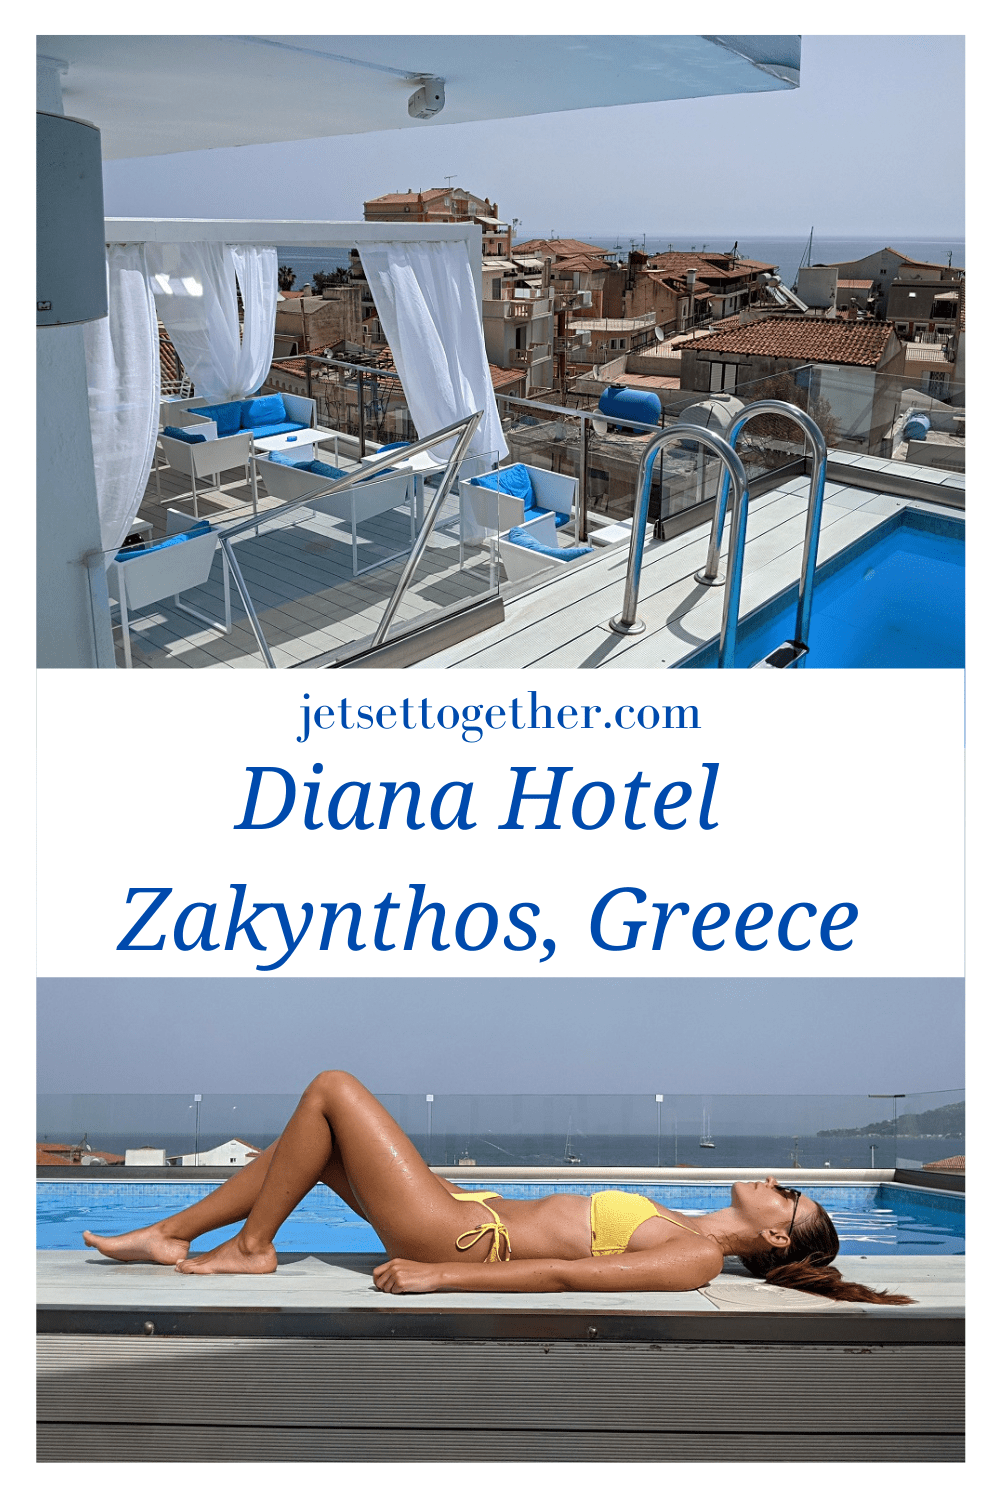 Diana Hotel in Zante Town